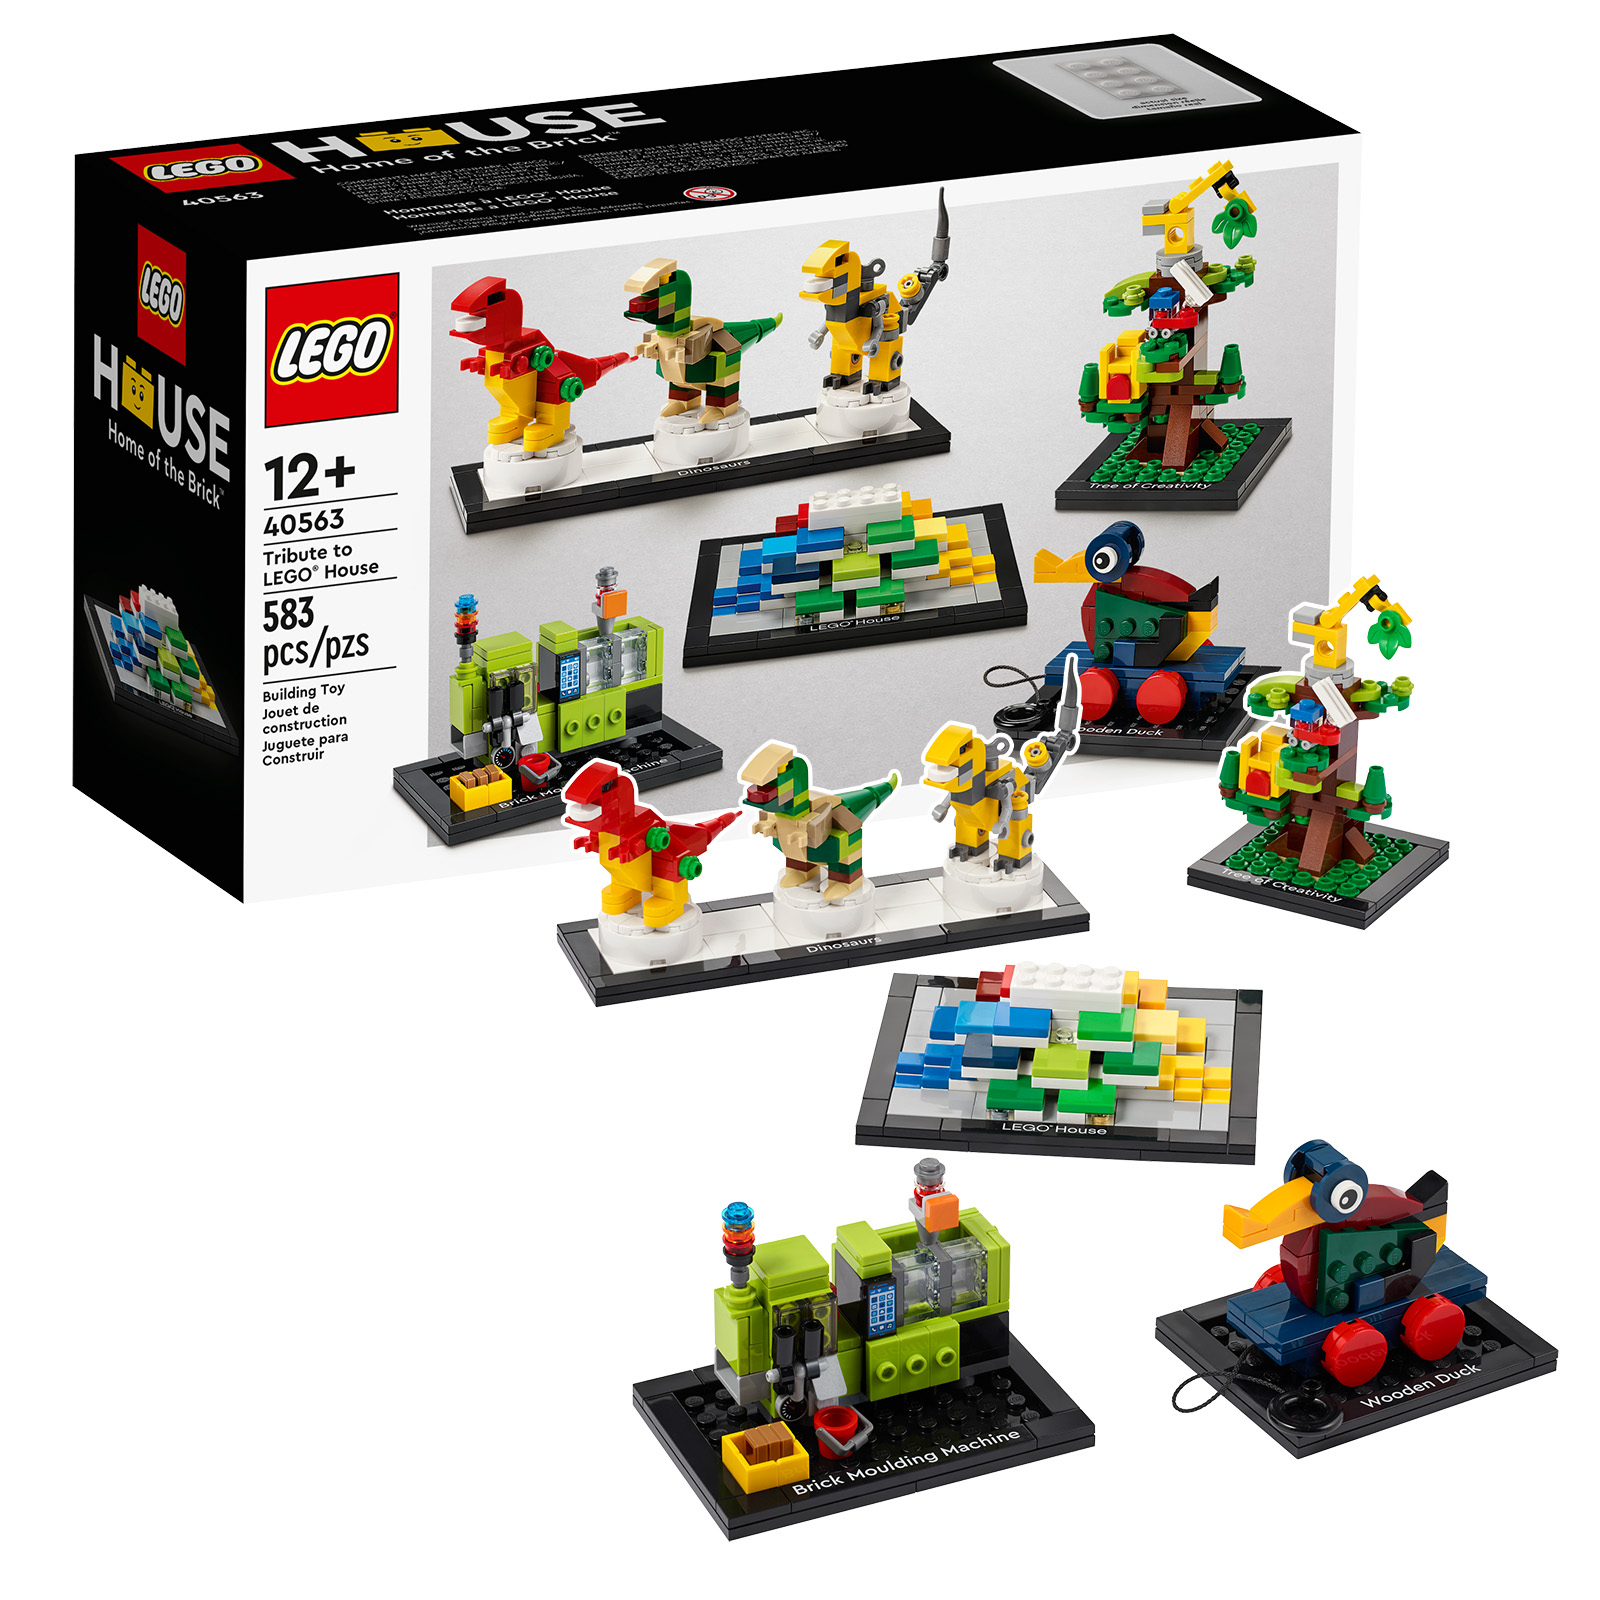 Áminning: síðustu klukkustundirnar til að fá eintak af LEGO 40563 Tribute to LEGO House settinu